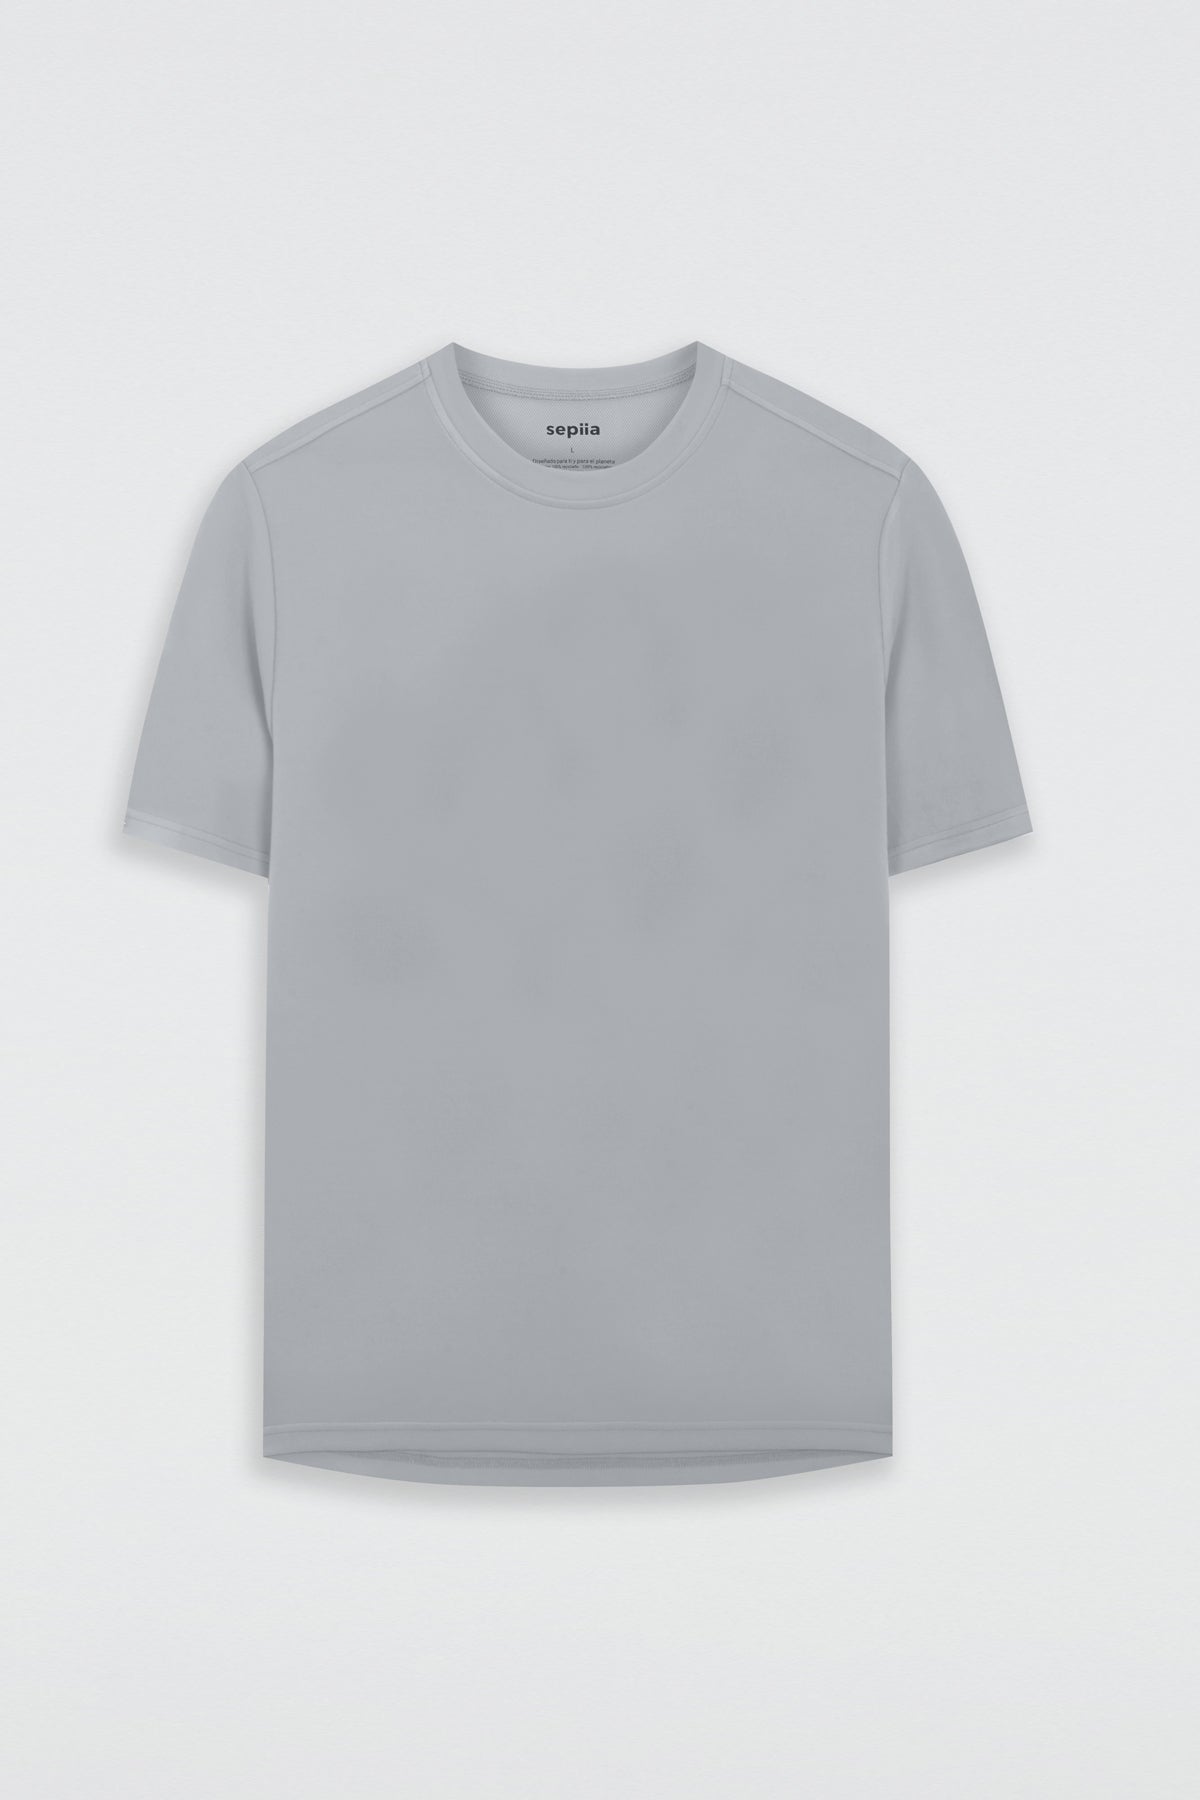 Camiseta de hombre gris bruma de manga corta, antiarrugas y antimanchas. Foto plano